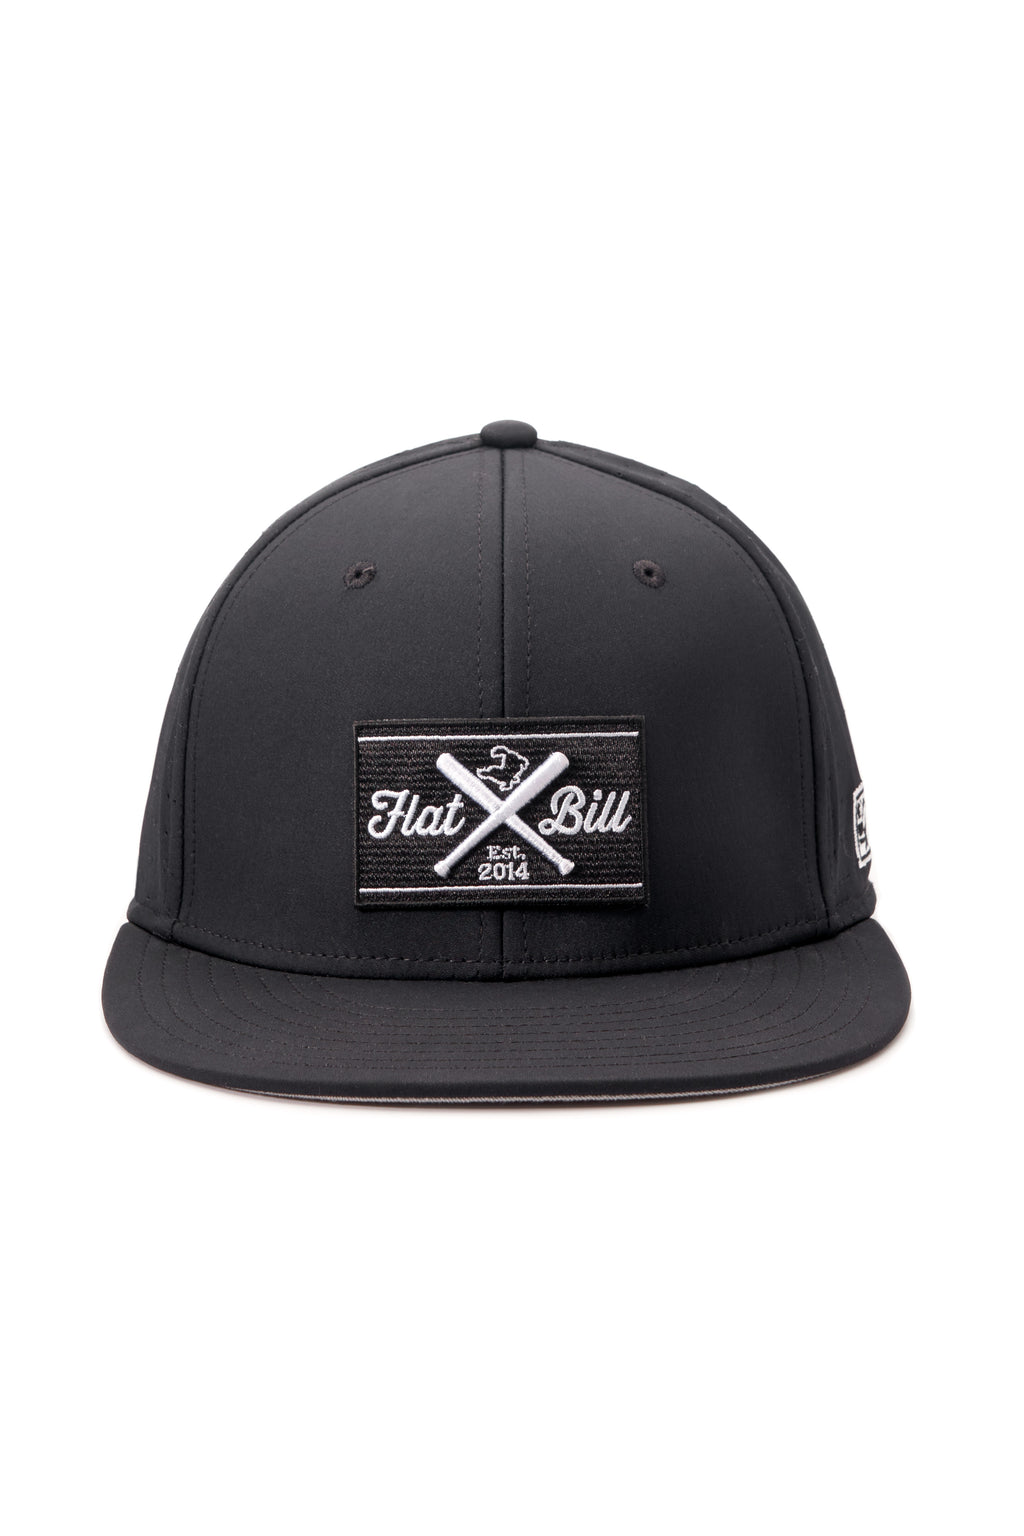 Flatbill Classic Black Flex Fit Cap